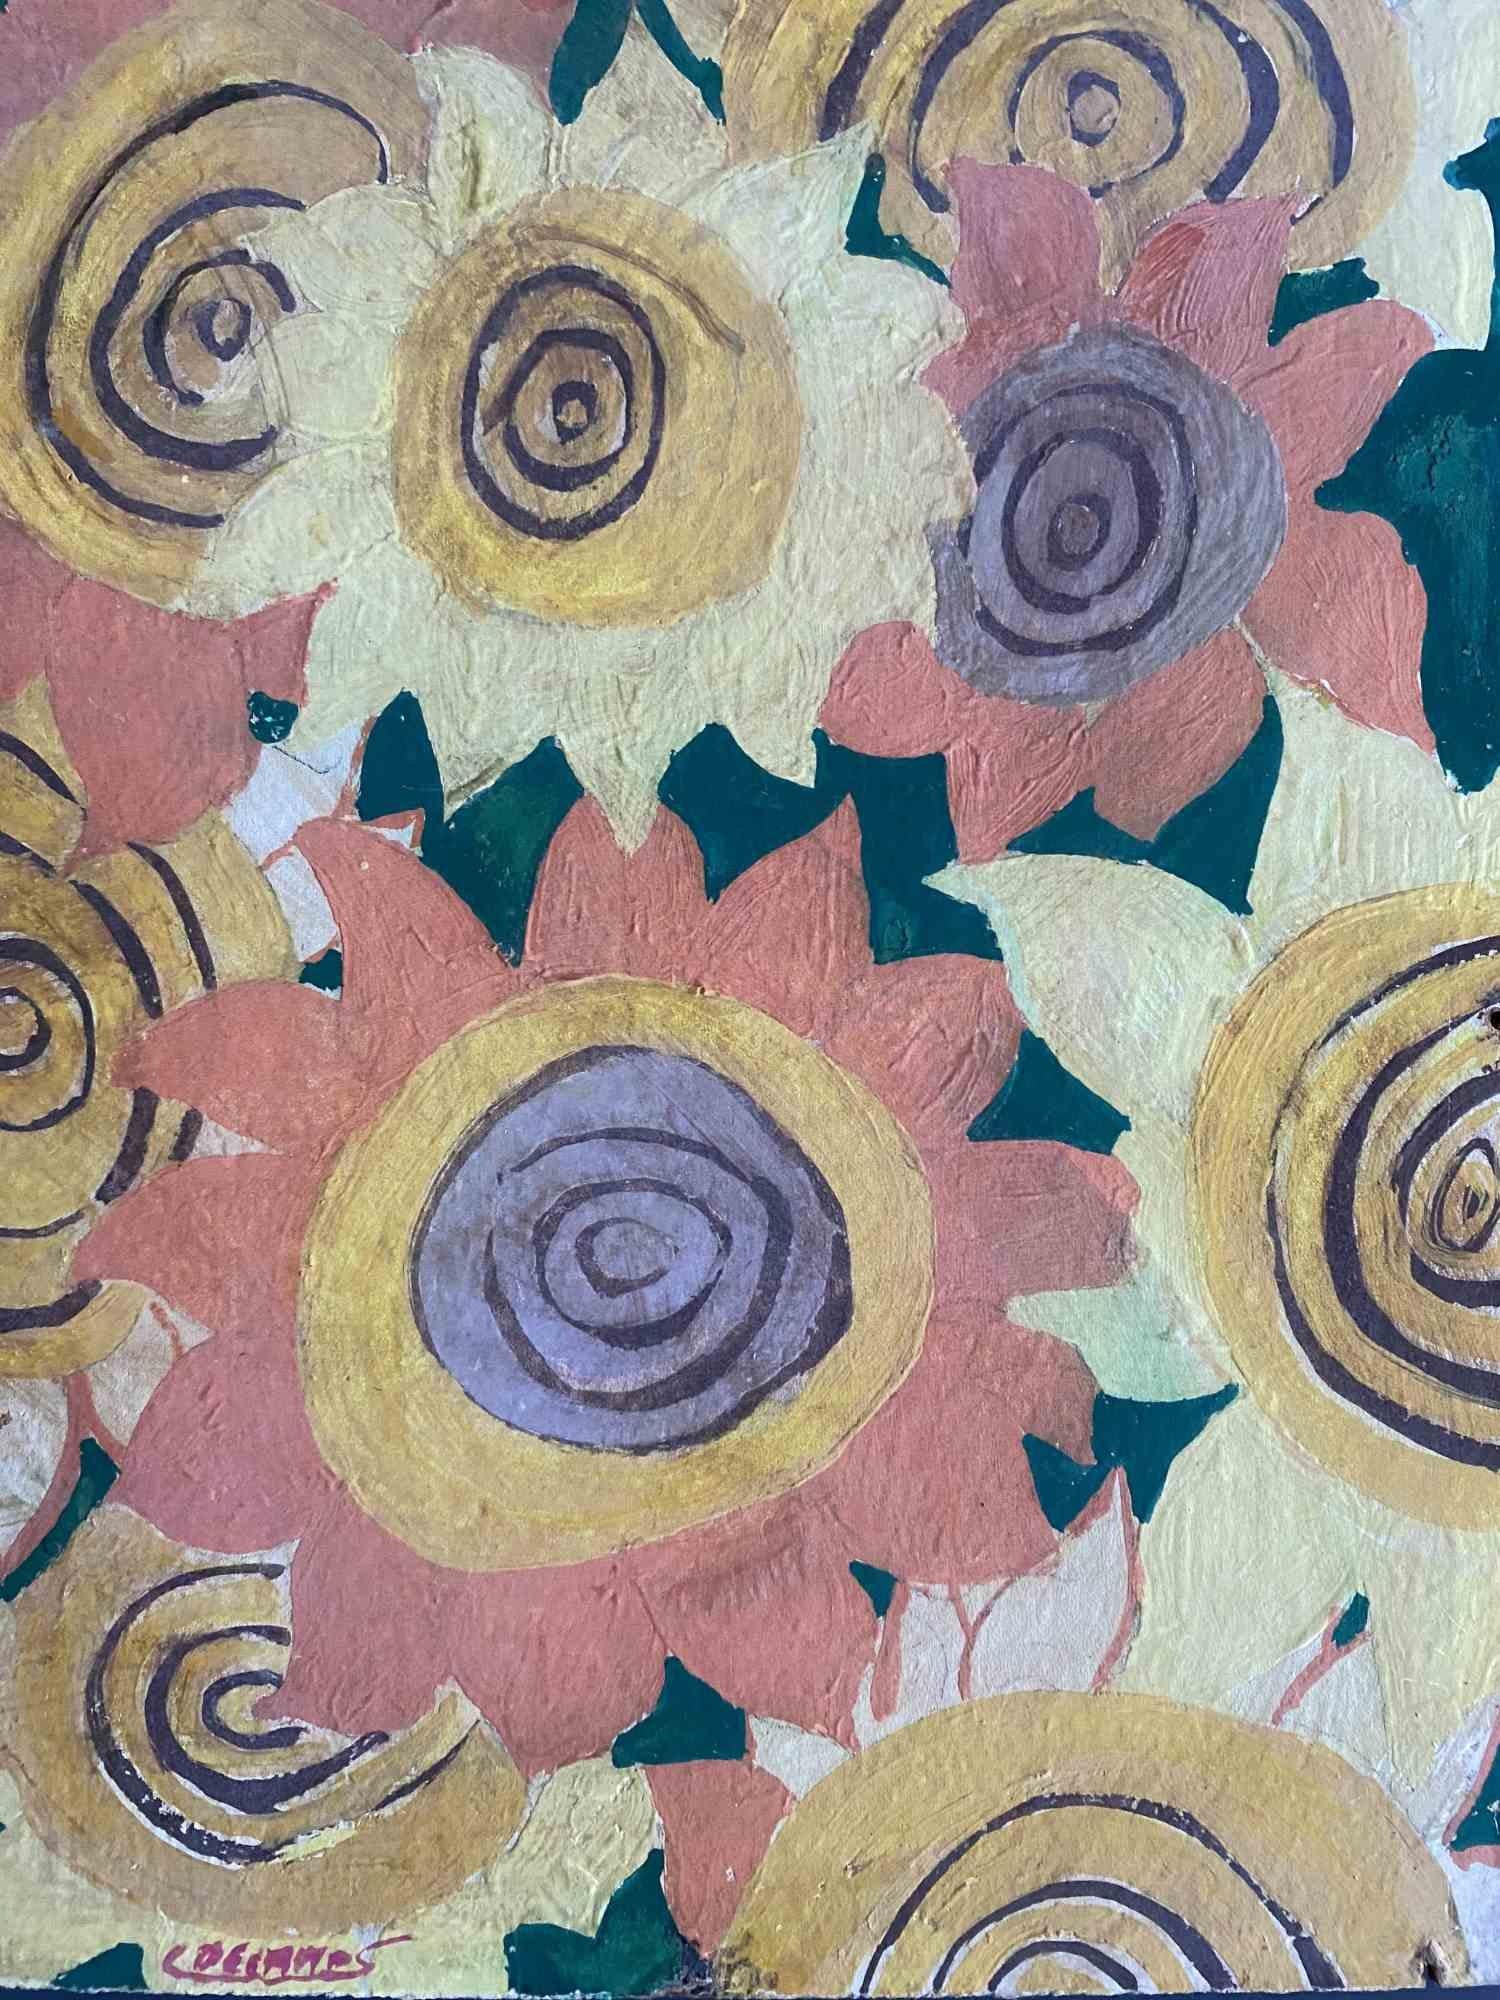 Fleur de soleil est une peinture réalisée par Claude Decamps dans les années 1970.

Peinture à l'huile sur toile cartonnée.

Signé à la main en bas.

Bonnes conditions.

L'œuvre d'art est représentée par des coups de pinceau souples et doux, avec